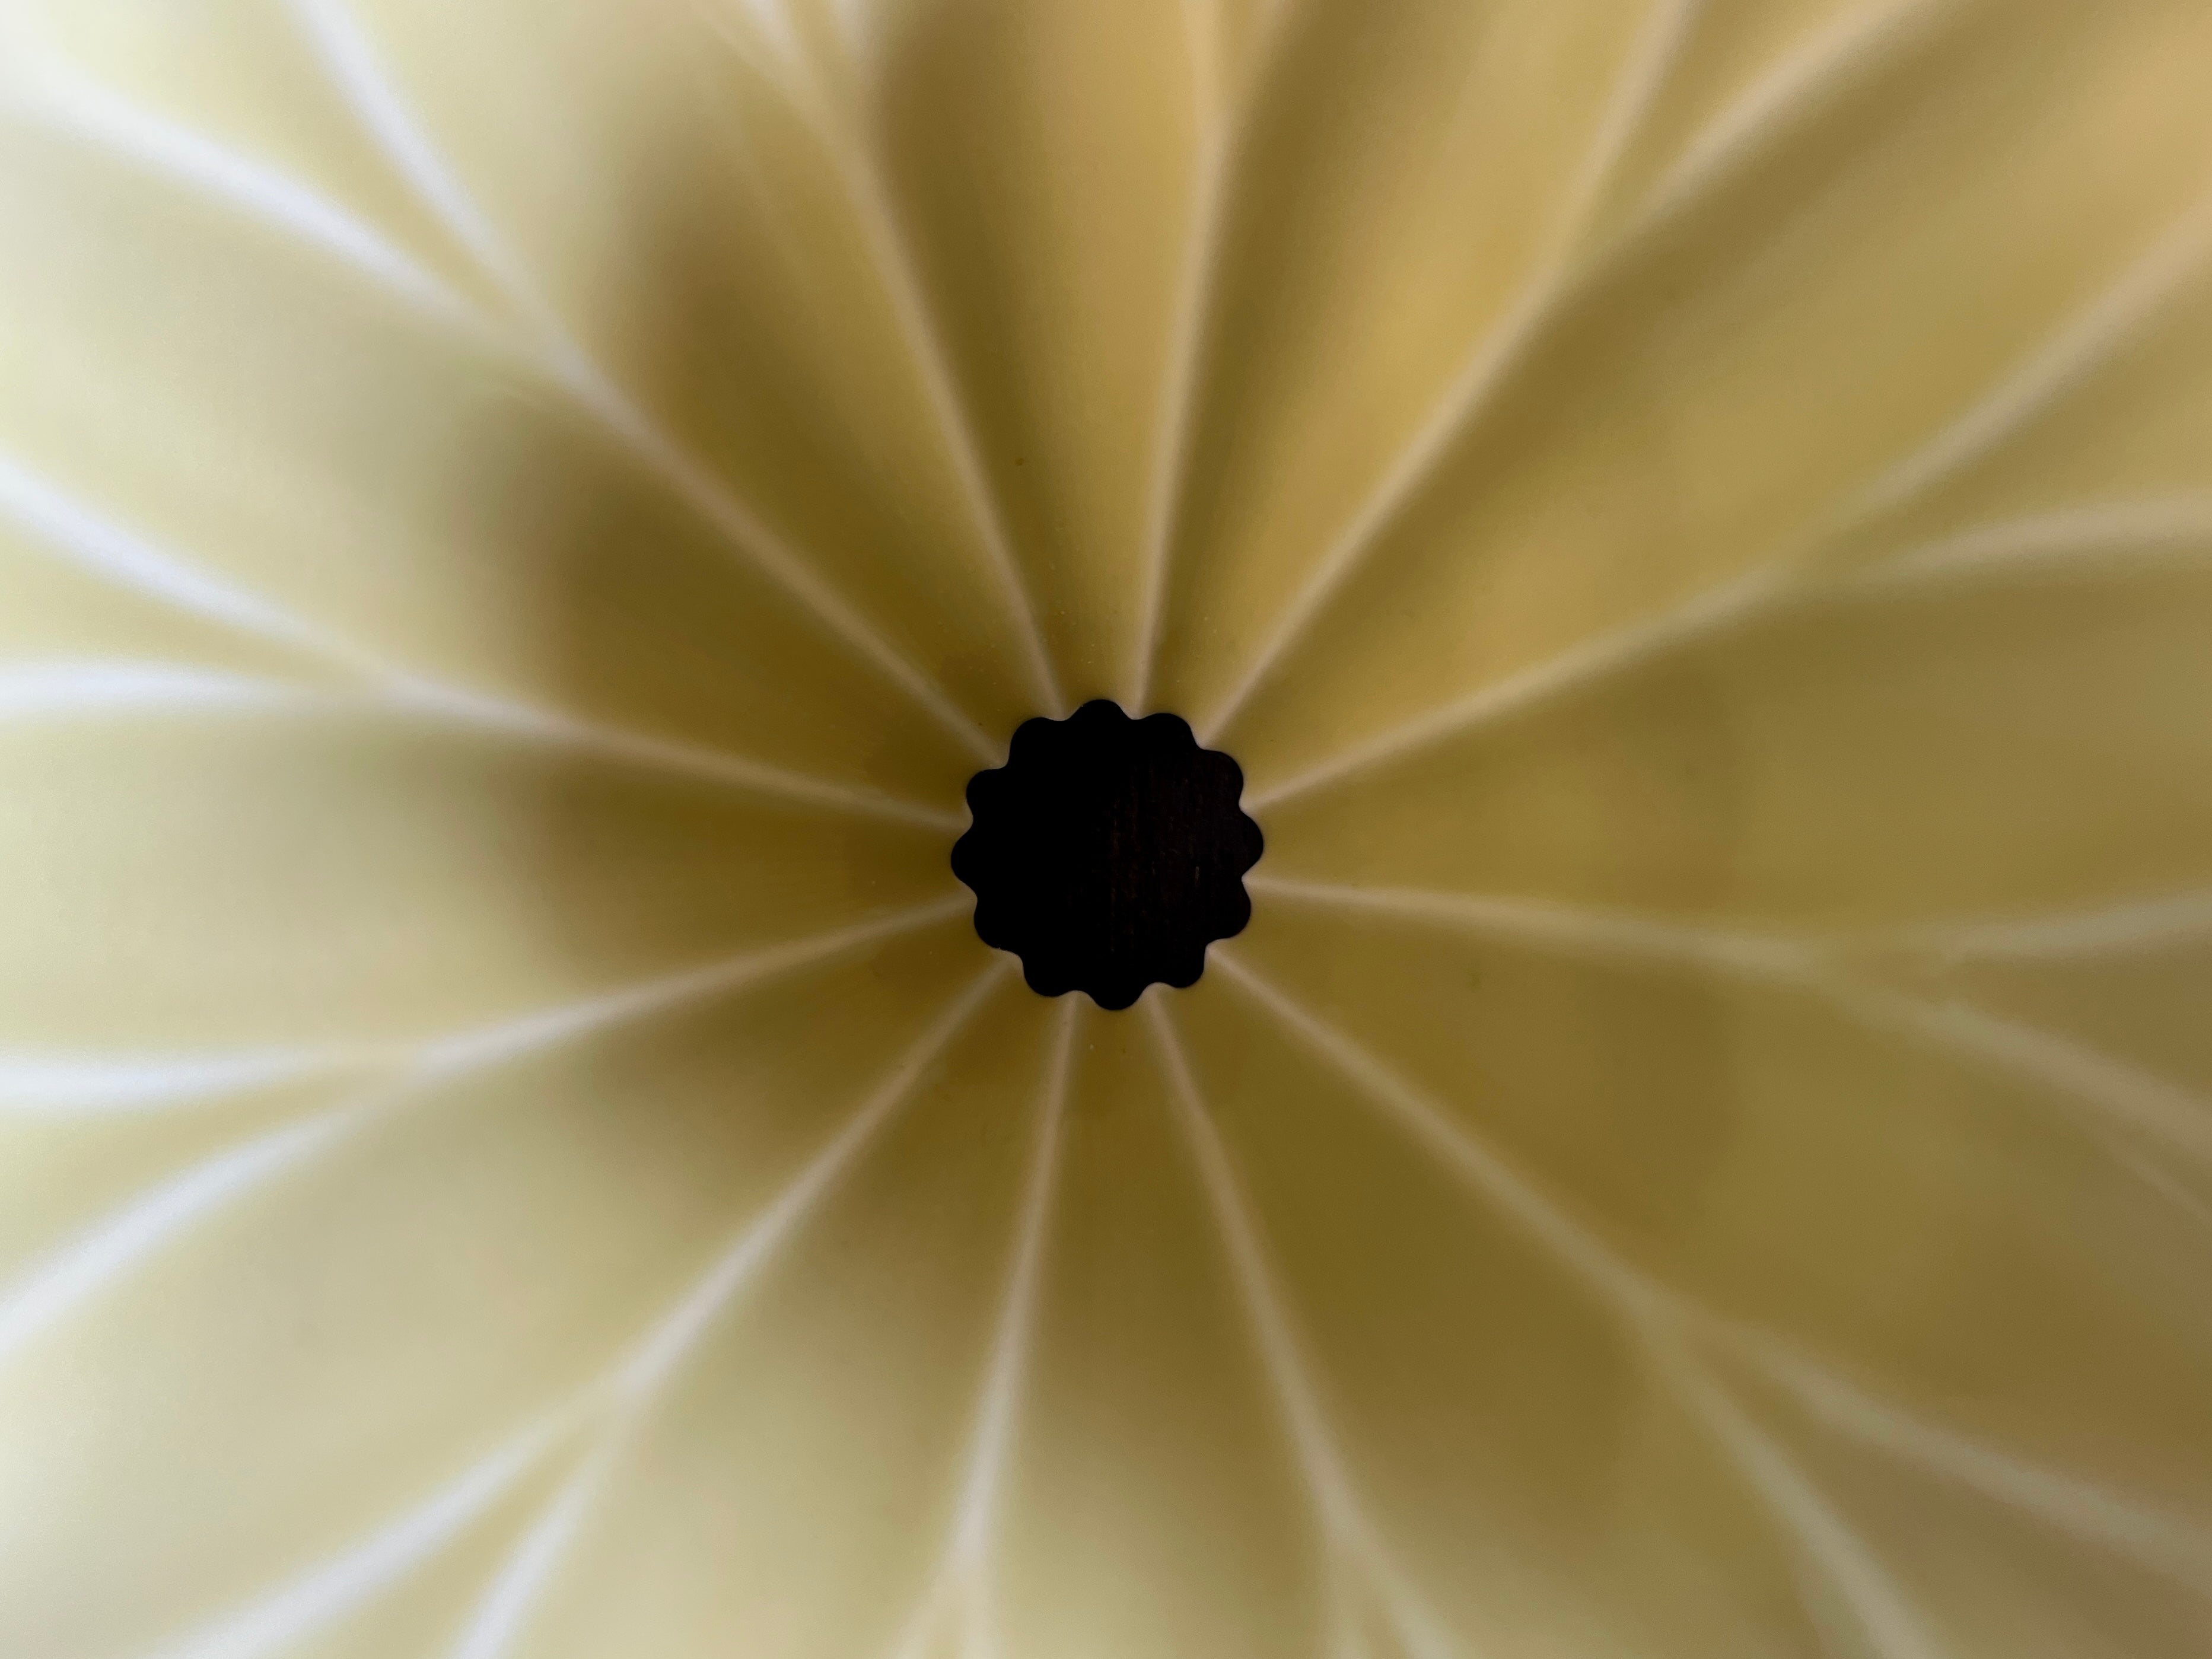 Detail of flower dripper